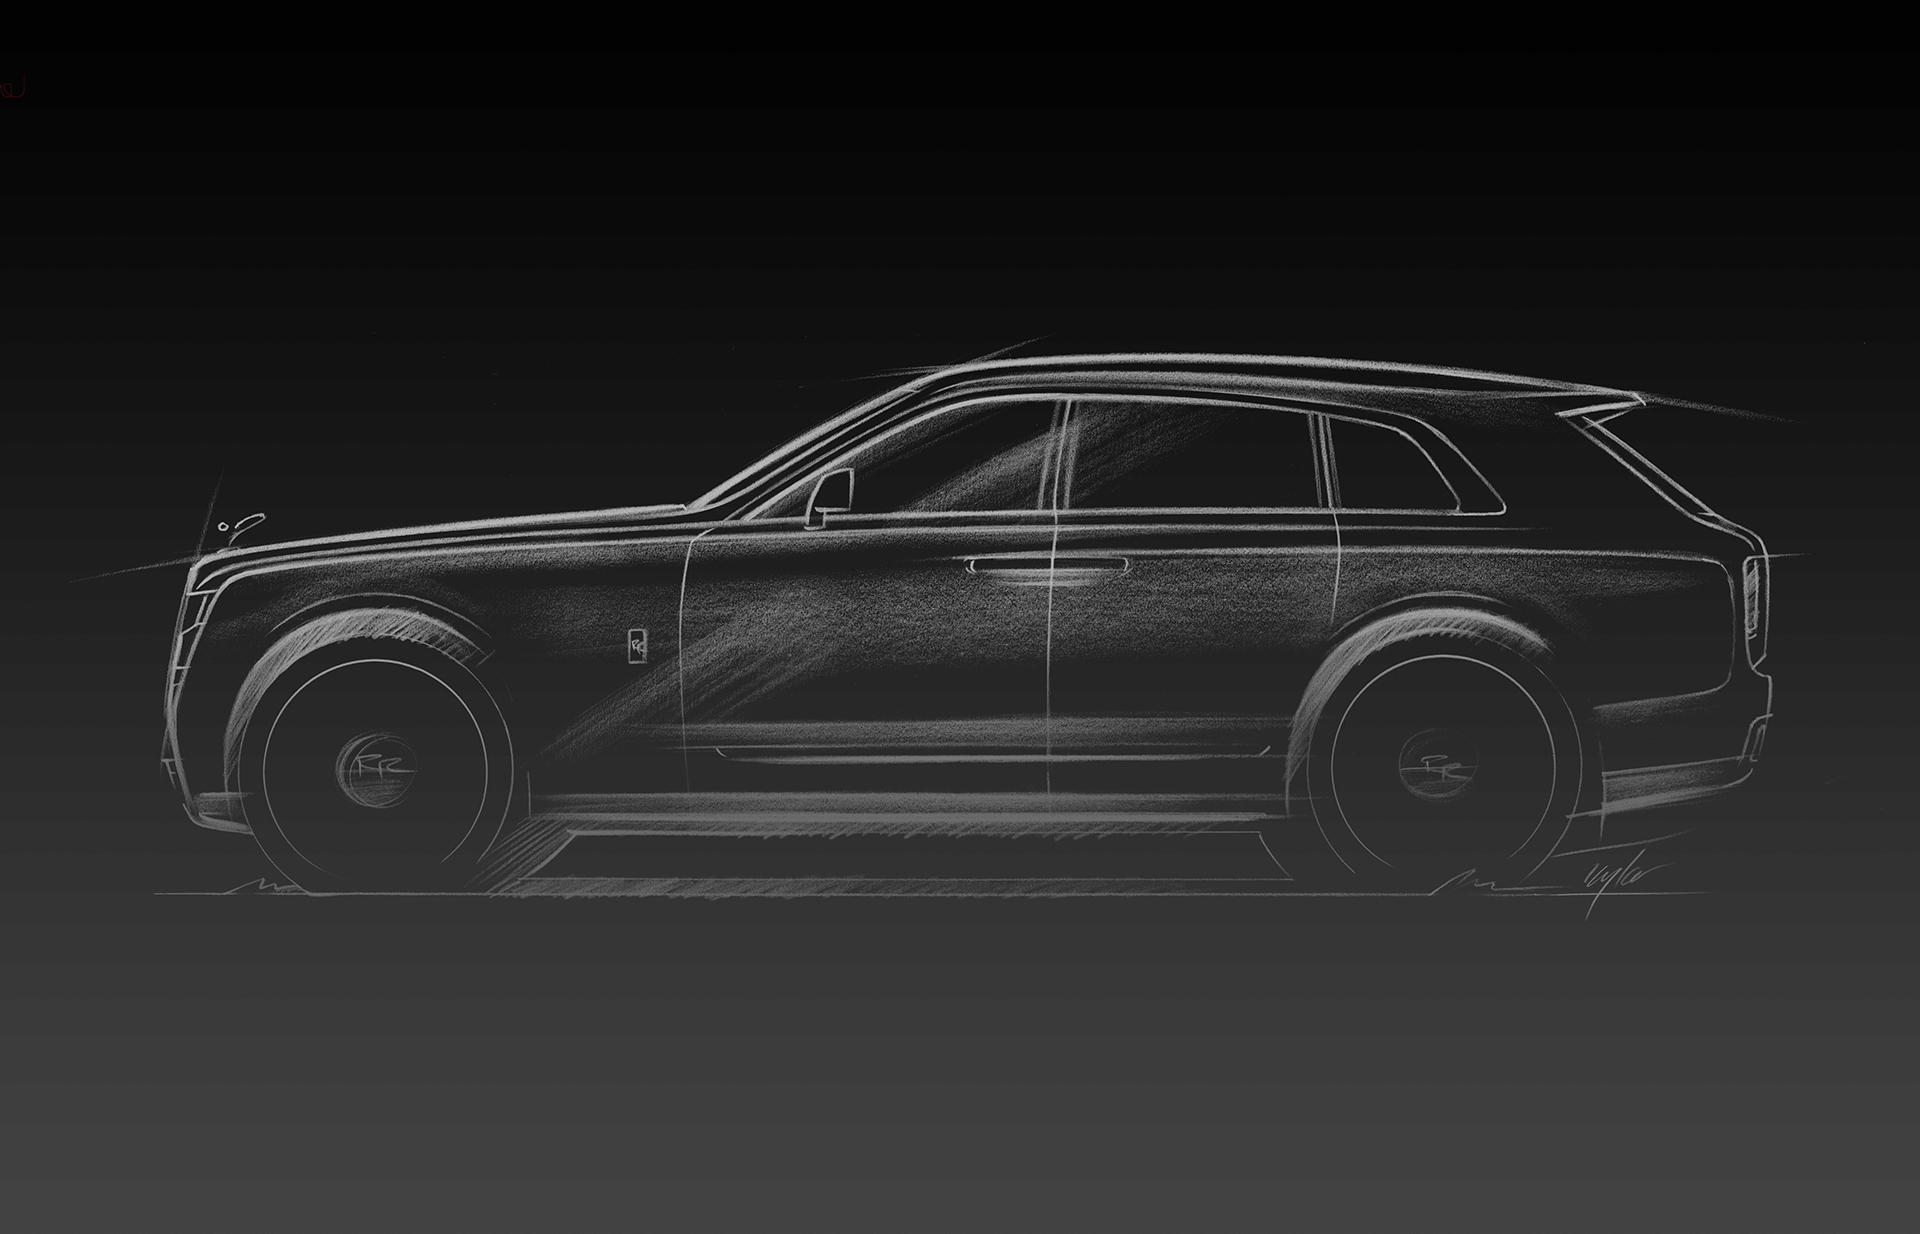 Rolls-Royce Cullinan, 2018 - Design Sketch